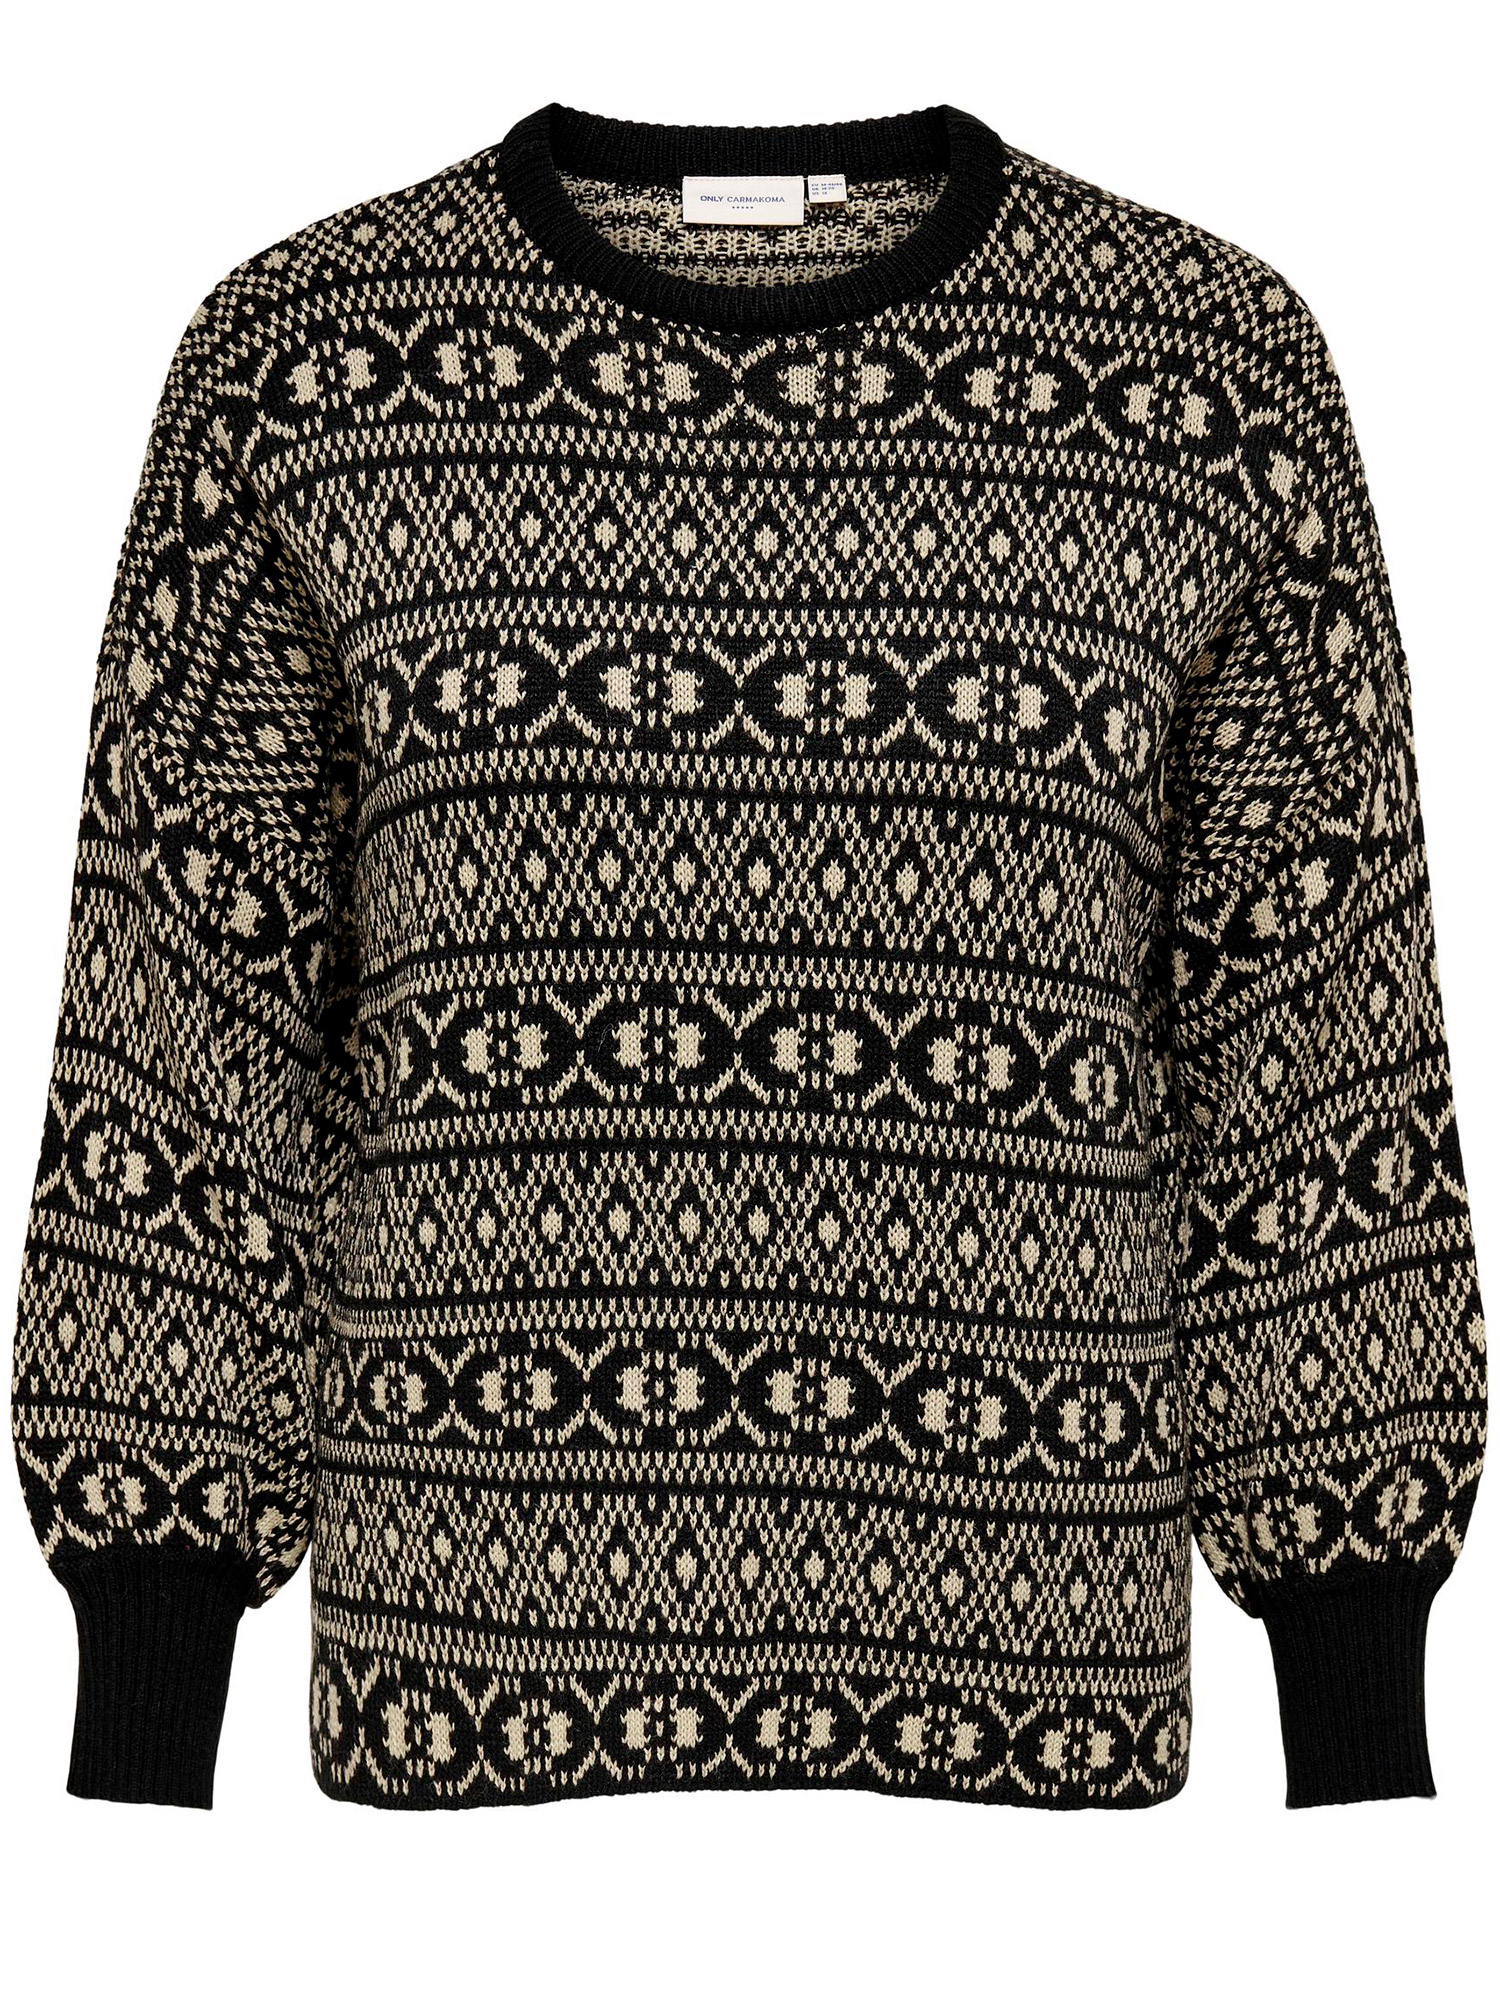 SIGRUN - Sort strik bluse med råhvid mønster fra Only Carmakoma